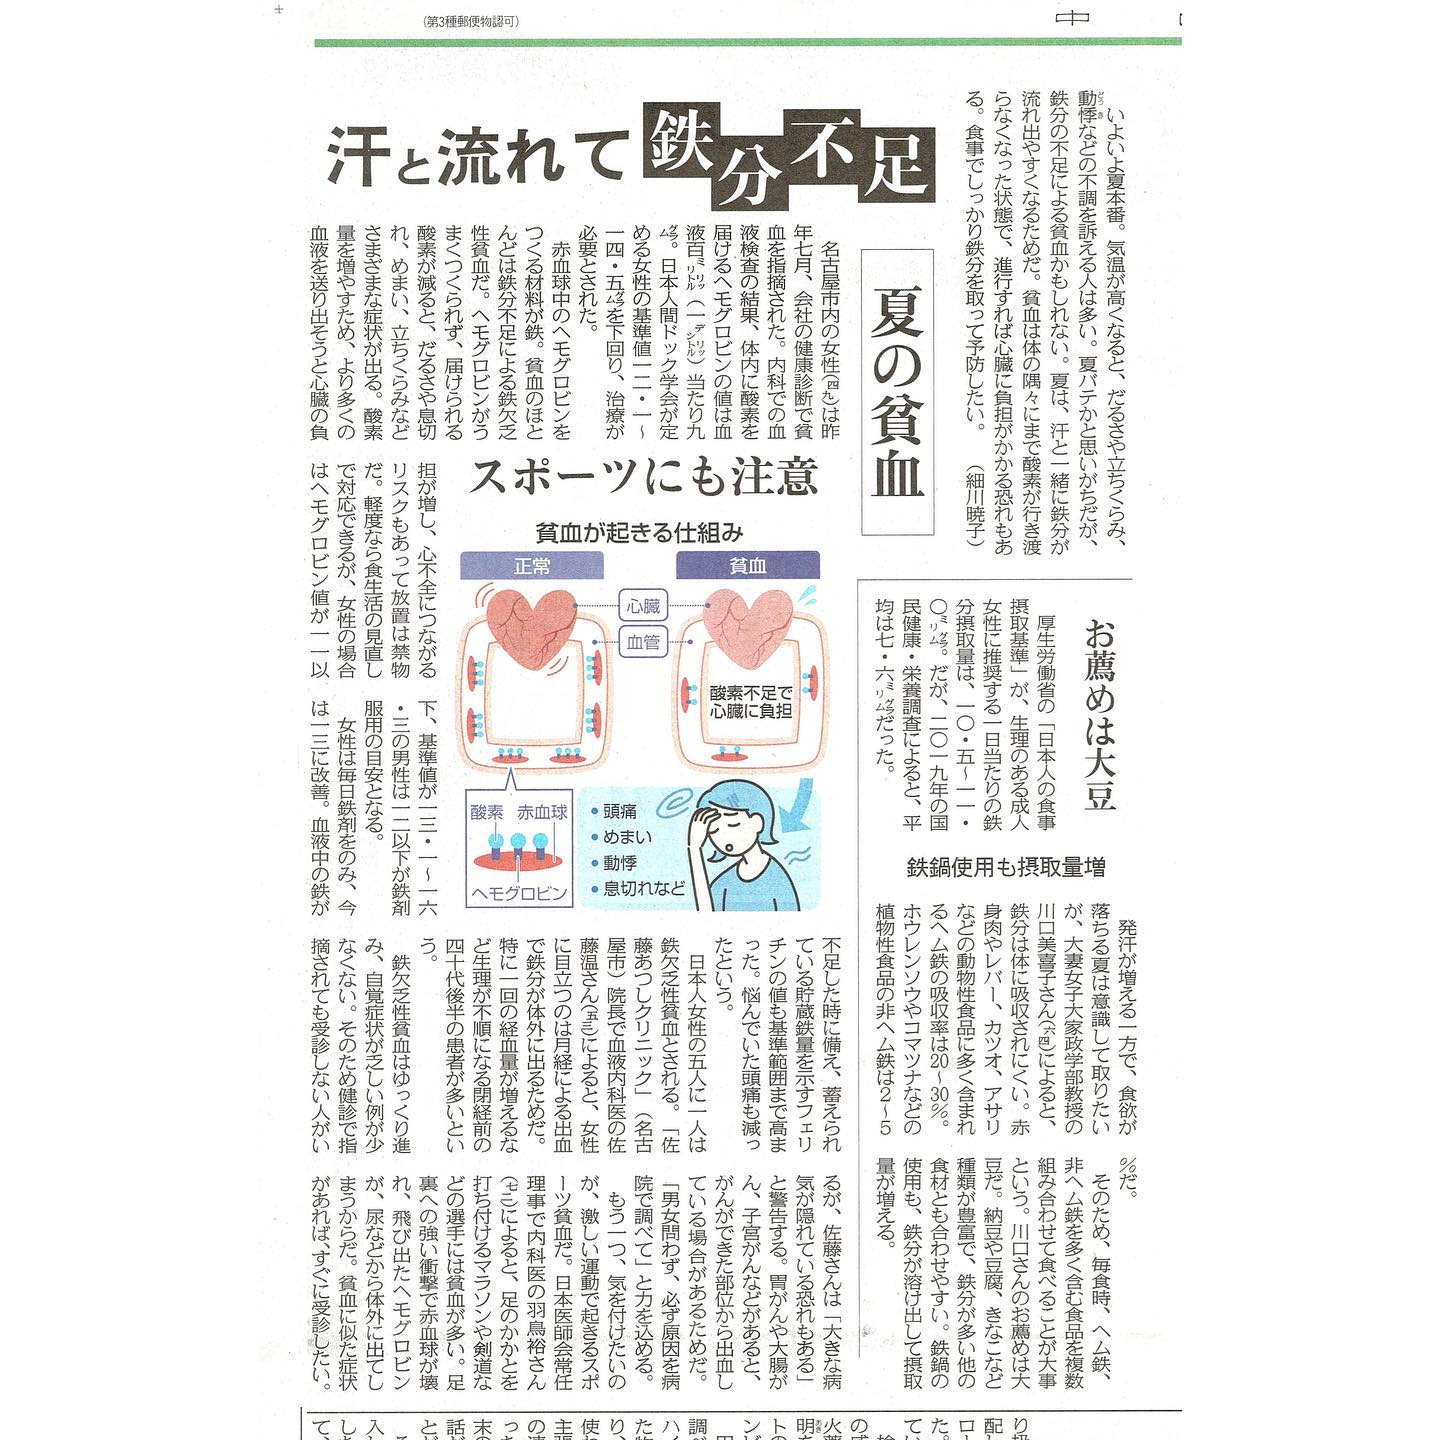 「鉄欠乏性貧血」について中日新聞の取材に協力しました